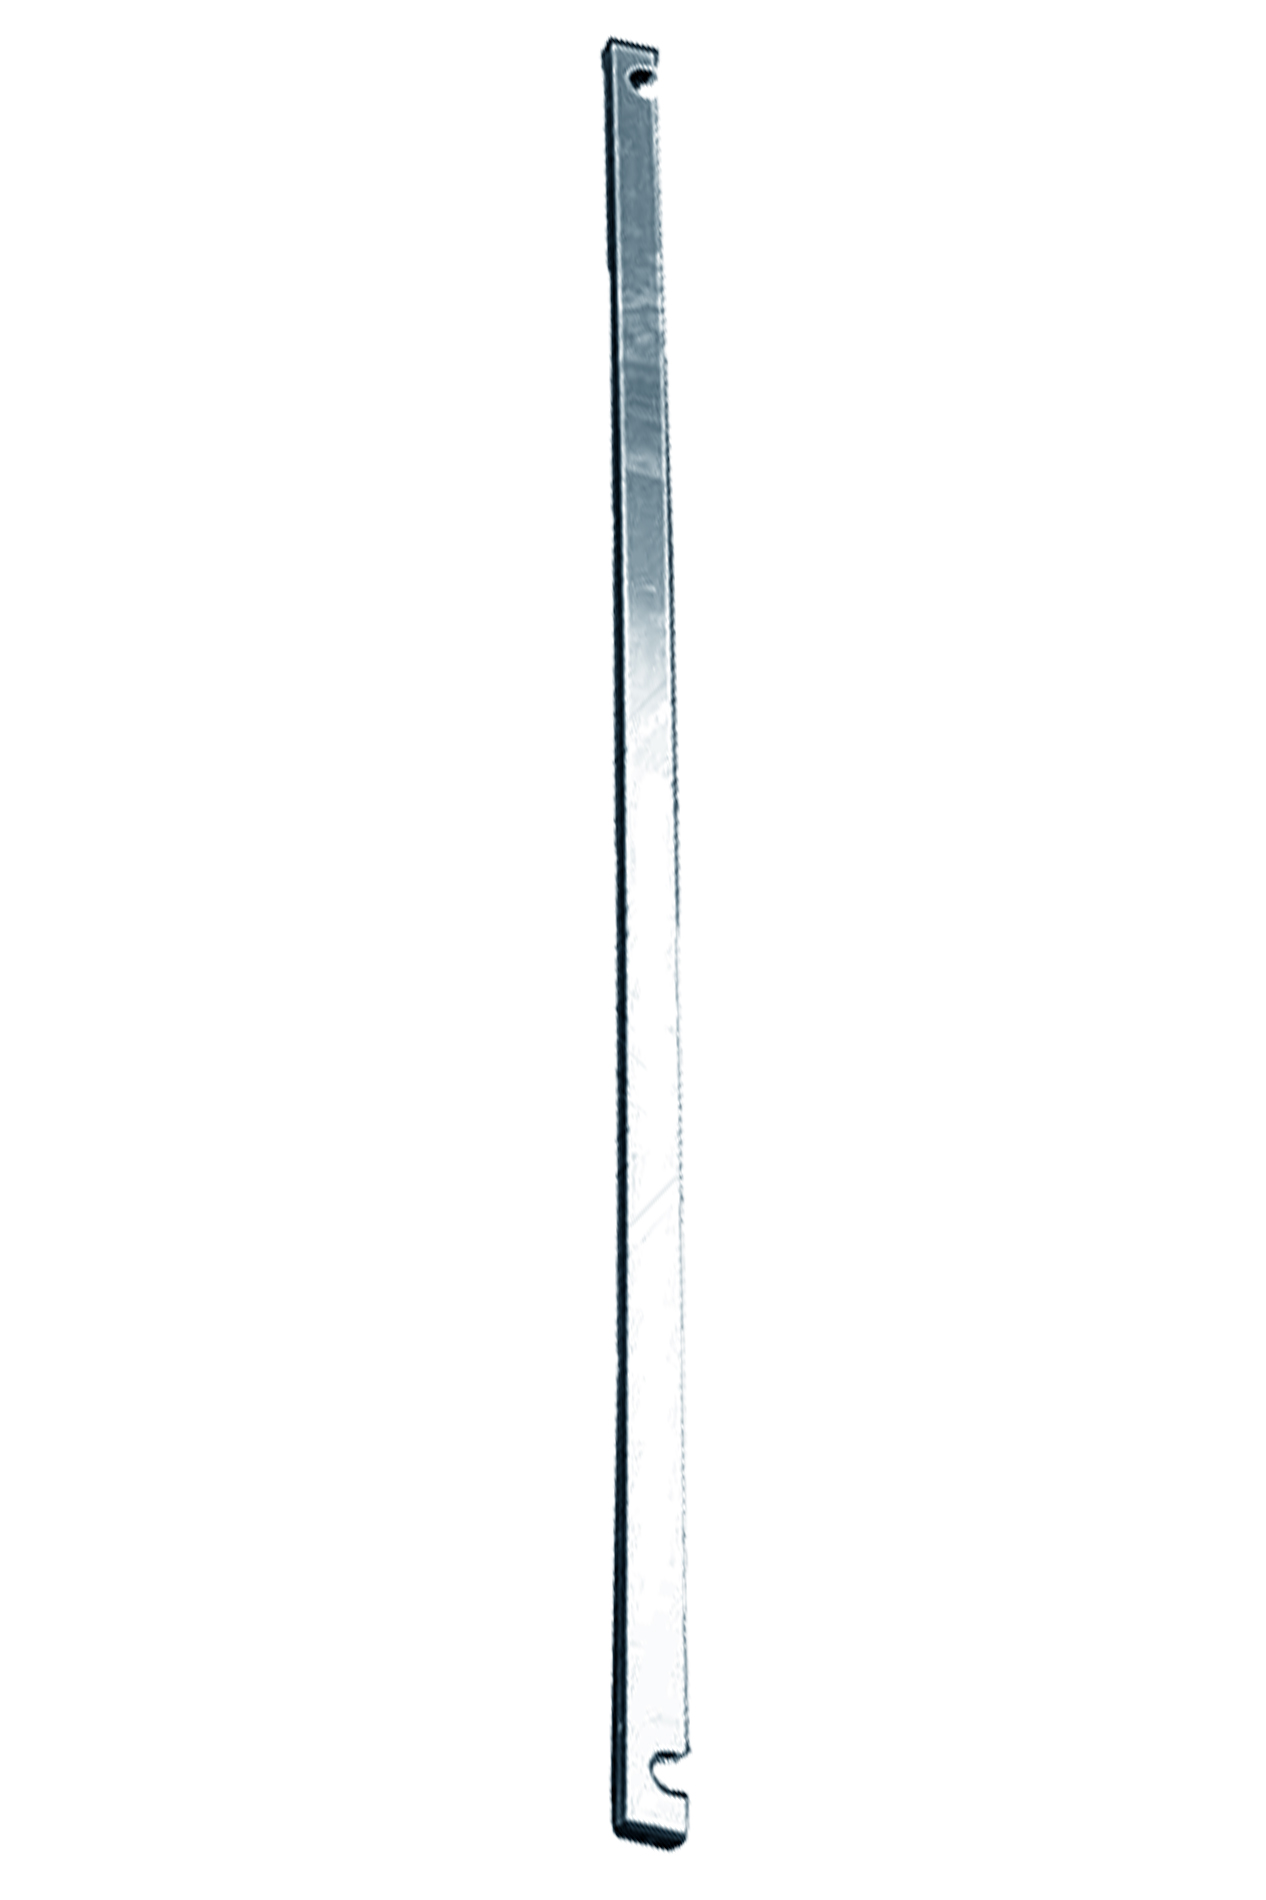 Дополнительное изображение STABILO 100-2 Передвижные подмости, рабочая высота 10,3 м, размер площадки (2.0x0.75 м)